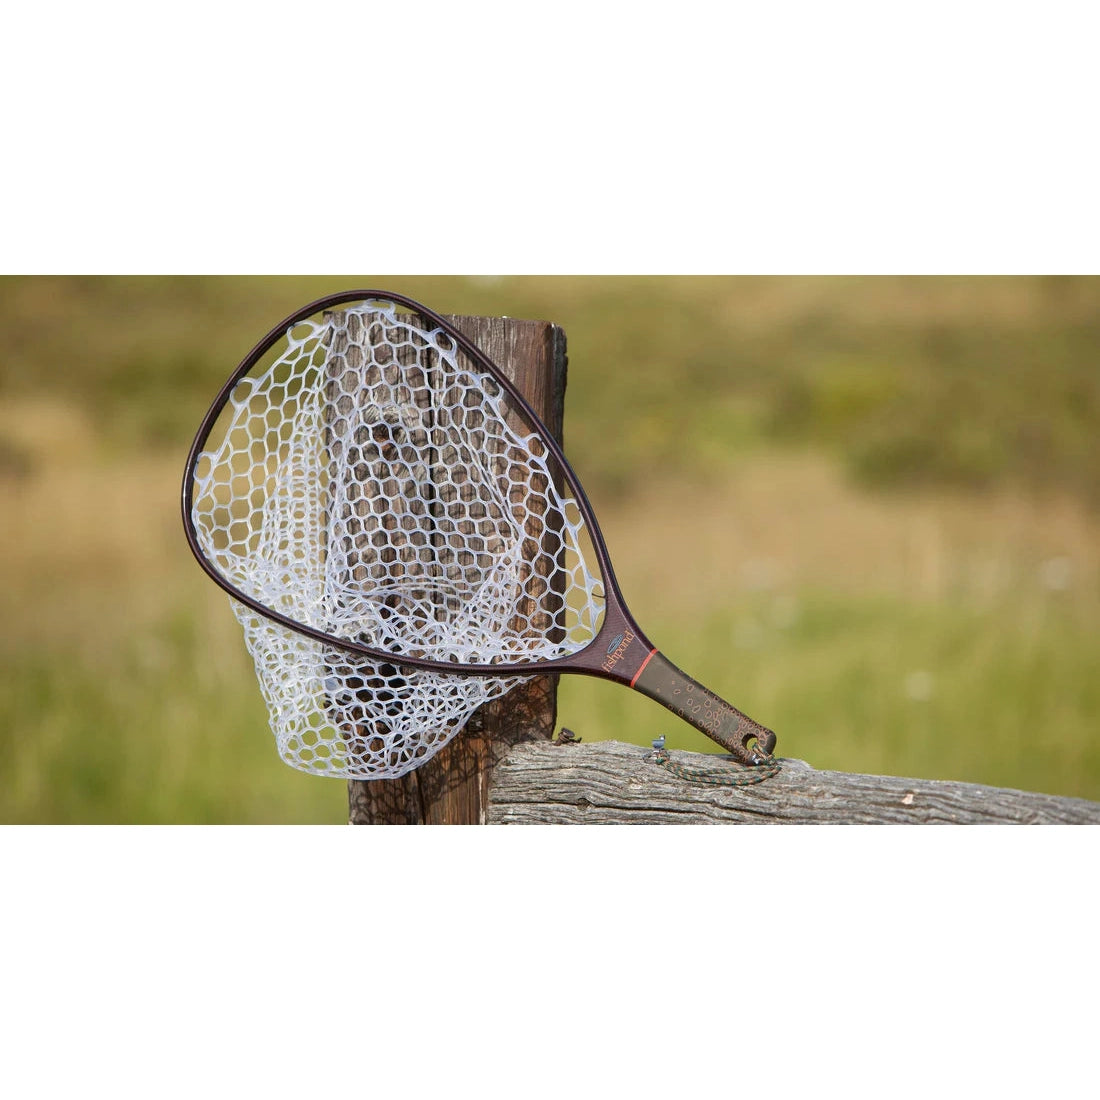 Orvis Wide-Mouth Hand Net, Best Fly Fishing Nets, Buy Fishing Nets Online, Orvis Trout Net